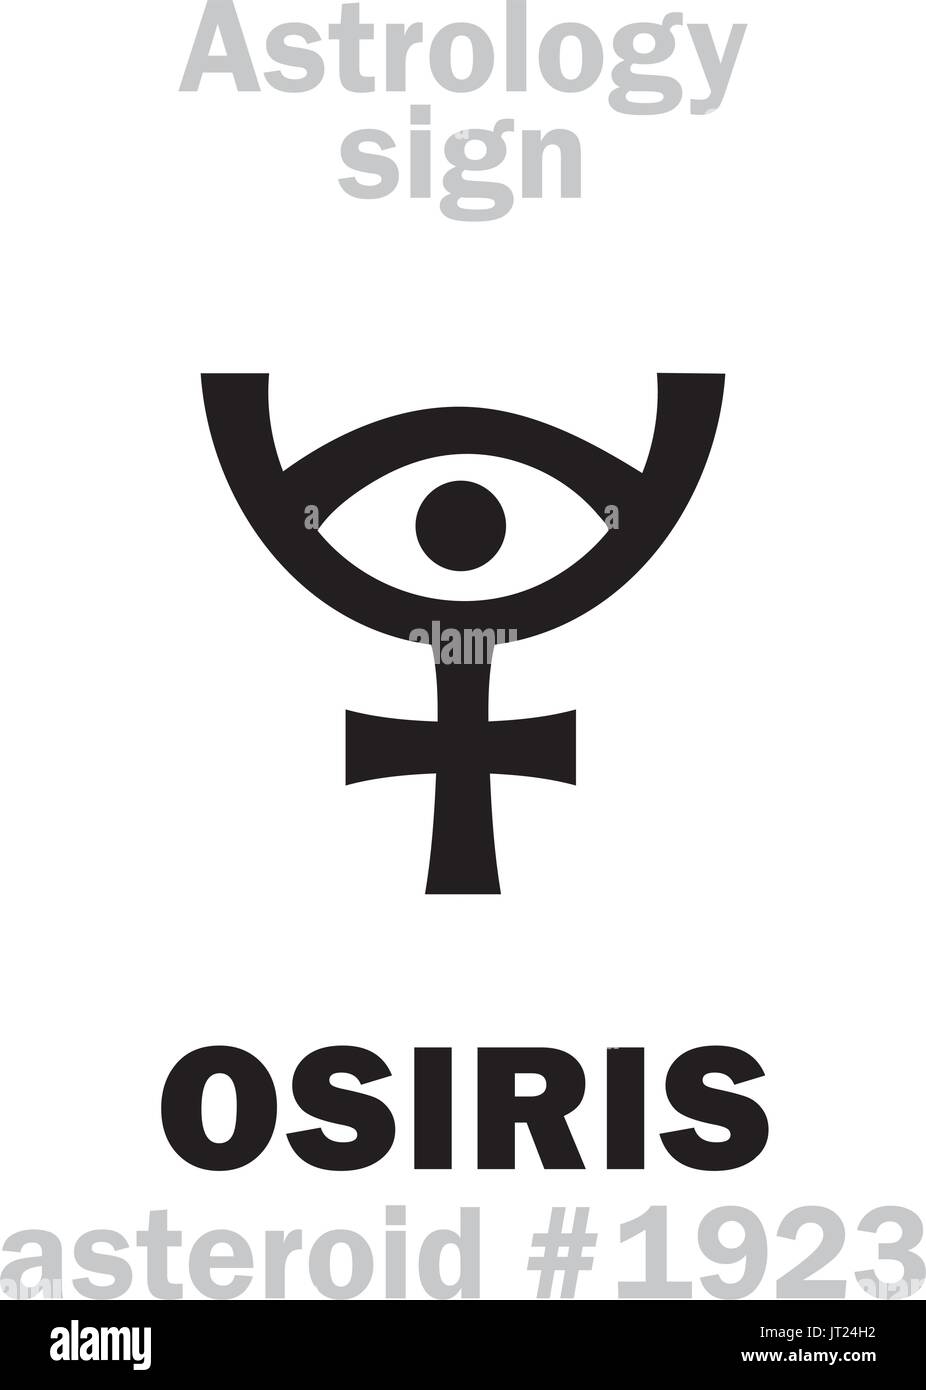 Astrologie-Alphabet: OSIRIS (Usir), Asteroid #1923. Hieroglyphen Charakter Zeichen (einzelnes Symbol). Stock Vektor